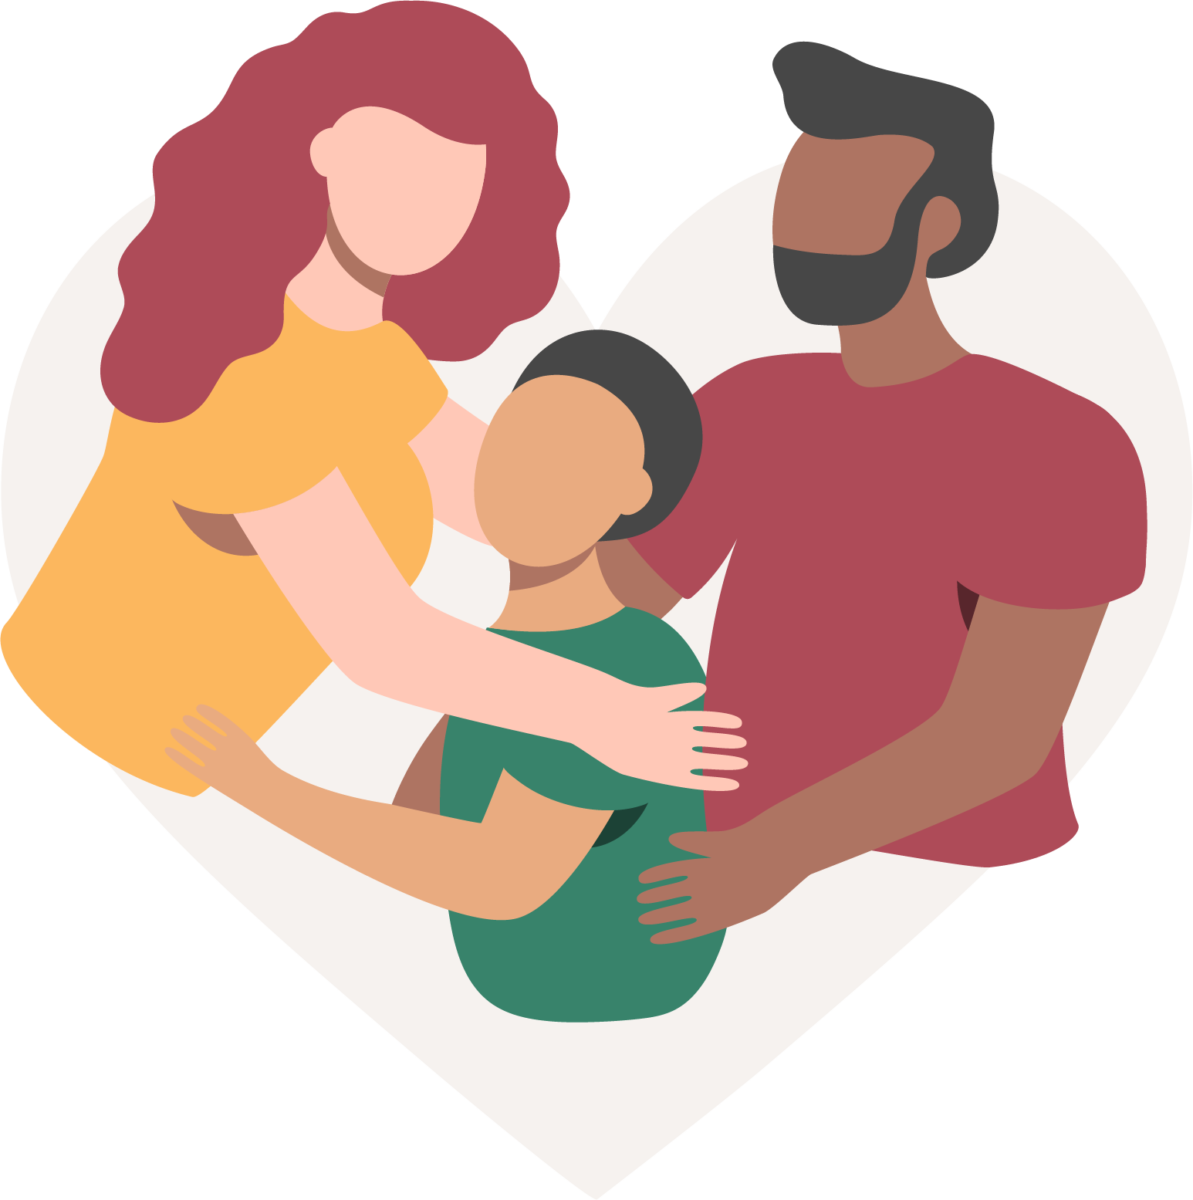 mulher de cabelo ruivo e camisa amarela e homem de cabelo e barba pretos abraçam criança de camisa verde e cabelo preto representando uma unidade familiar